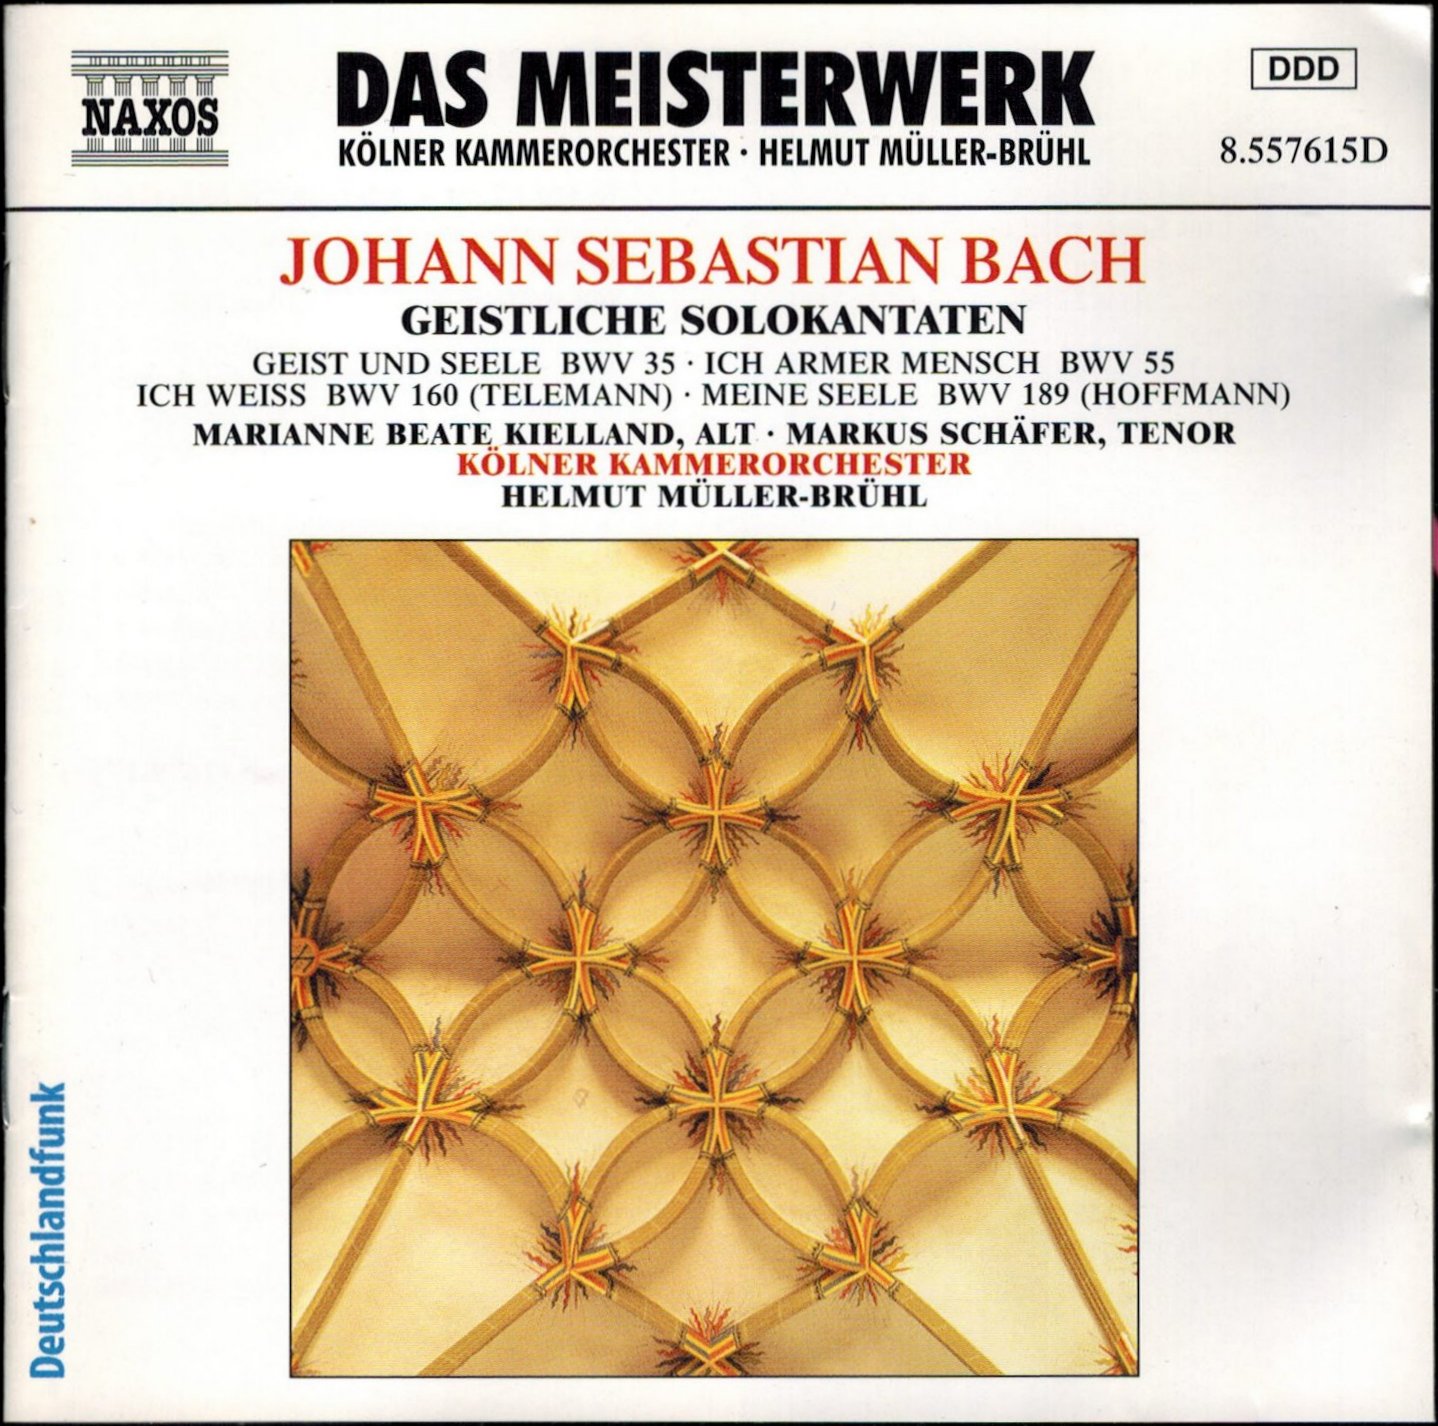 Helmut Muller-Bruhl & Kolner Kammerorchester - Bach Cantatas & Other ...